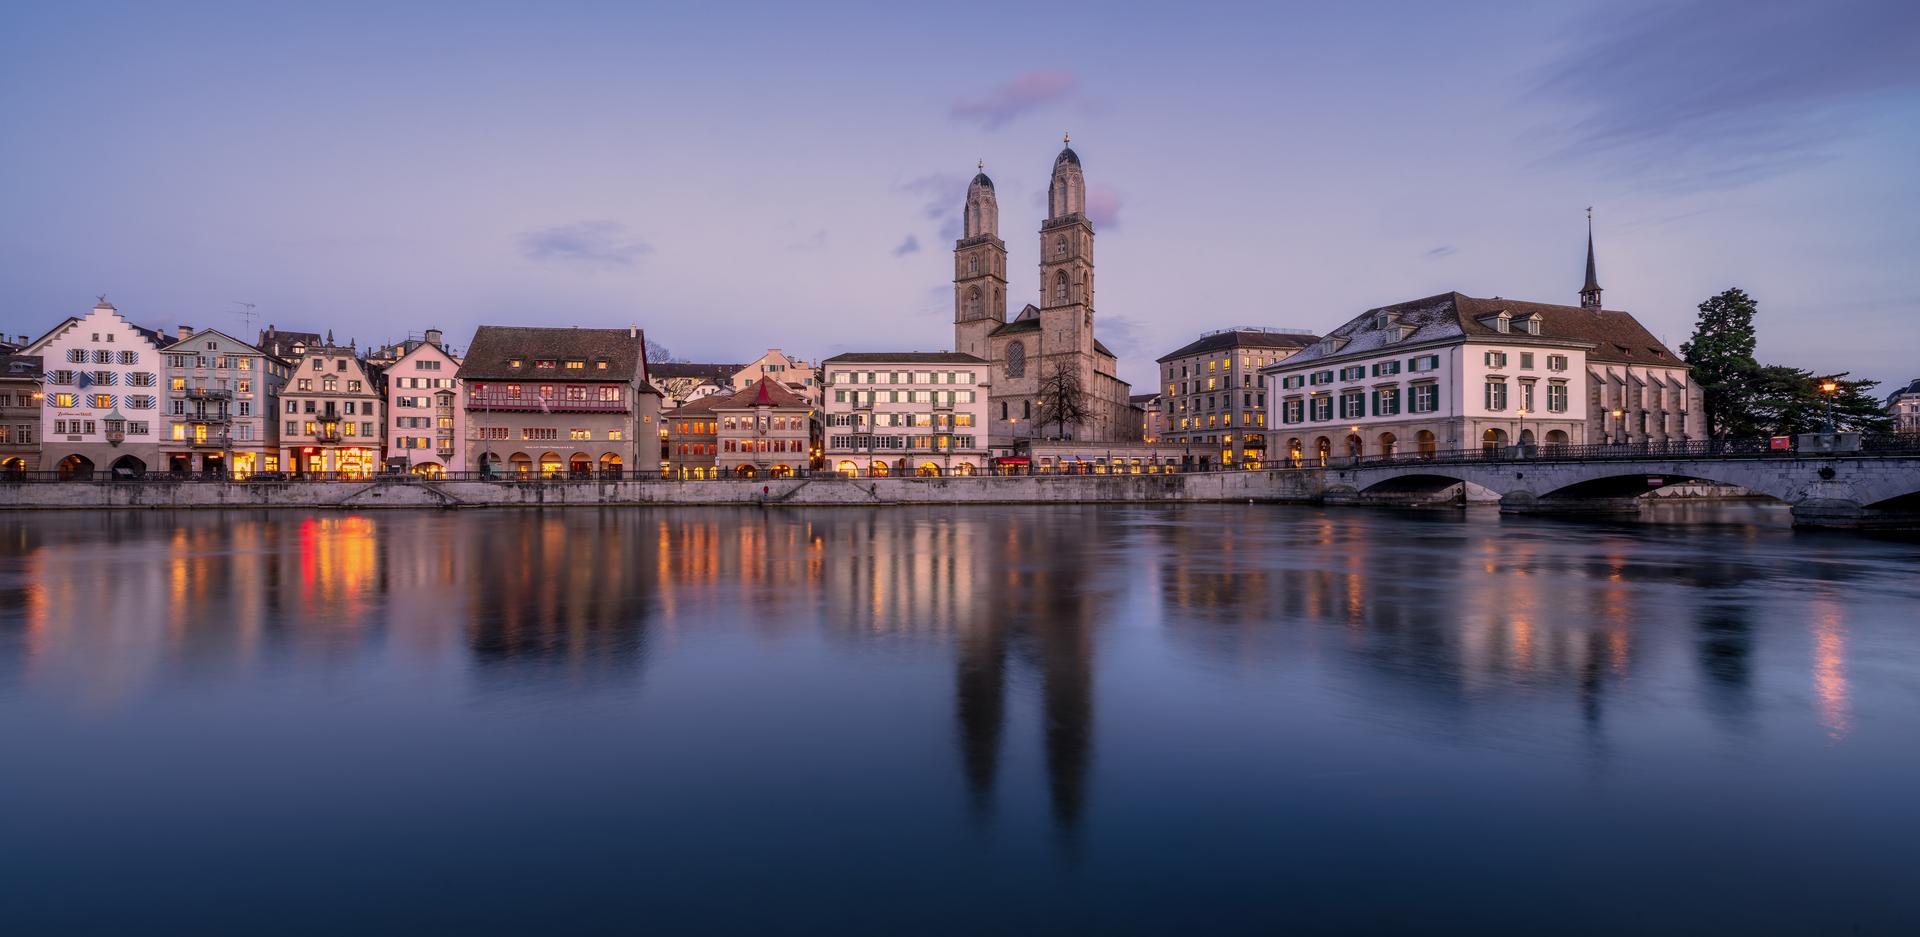 Vontobel Securities in Zurich - Limmat with the city of Zurich in the background